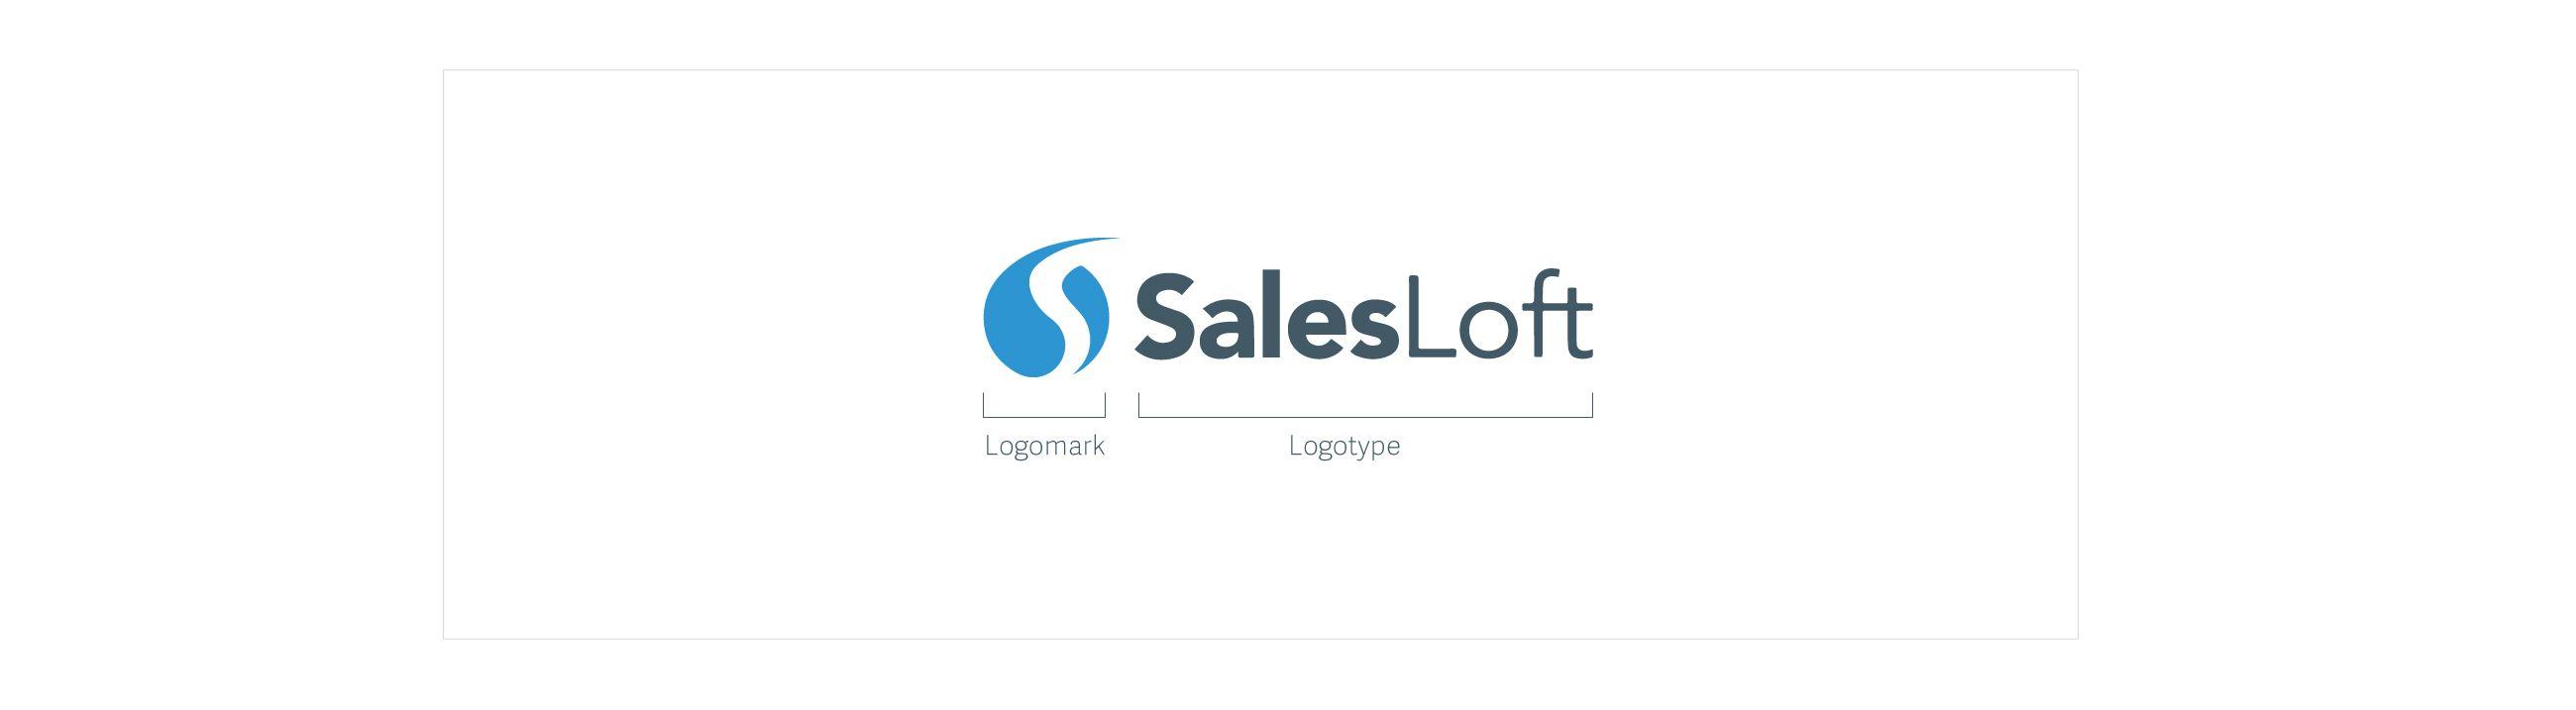 SalesLoft Logo - SalesLoft Brand Guidelines